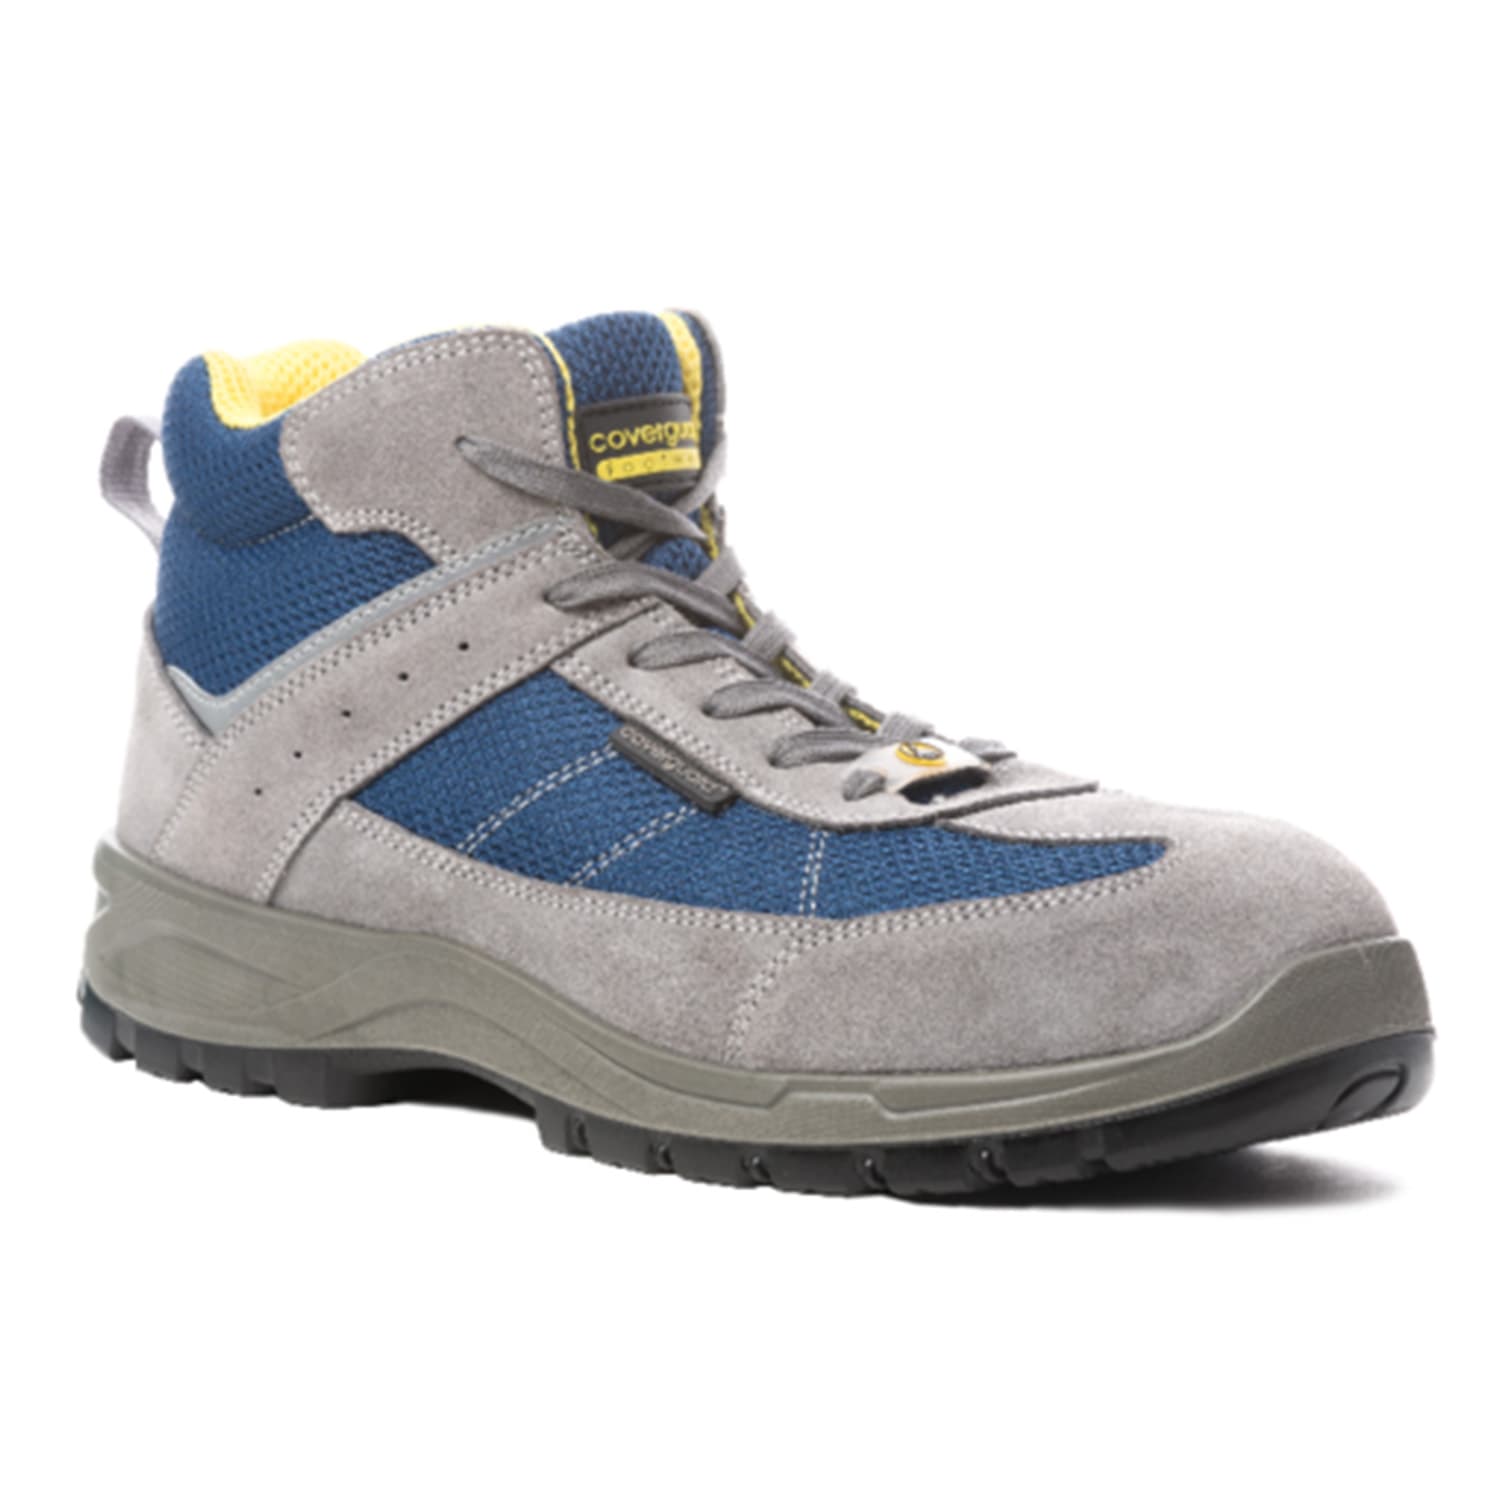 Chaussures de sécurité hautes Coverguard Lead S1P SRC ESD gris/bleu noir pointure 41 photo du produit